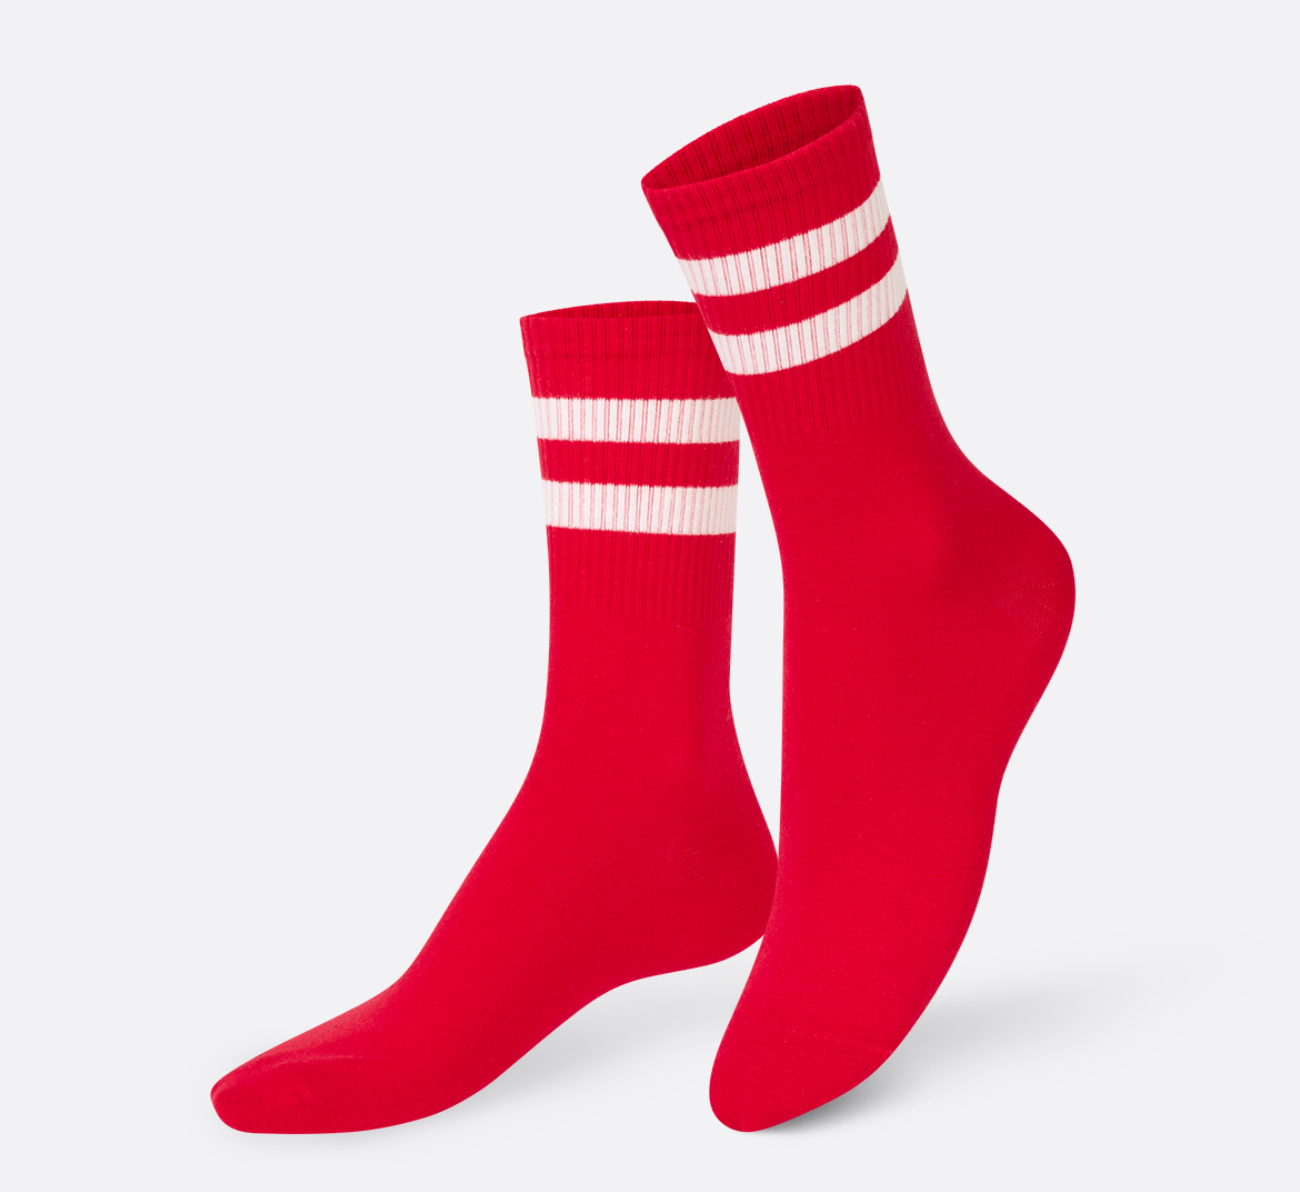 Eat My Socks – Ketchup Mustard (2 pairs of Socks)